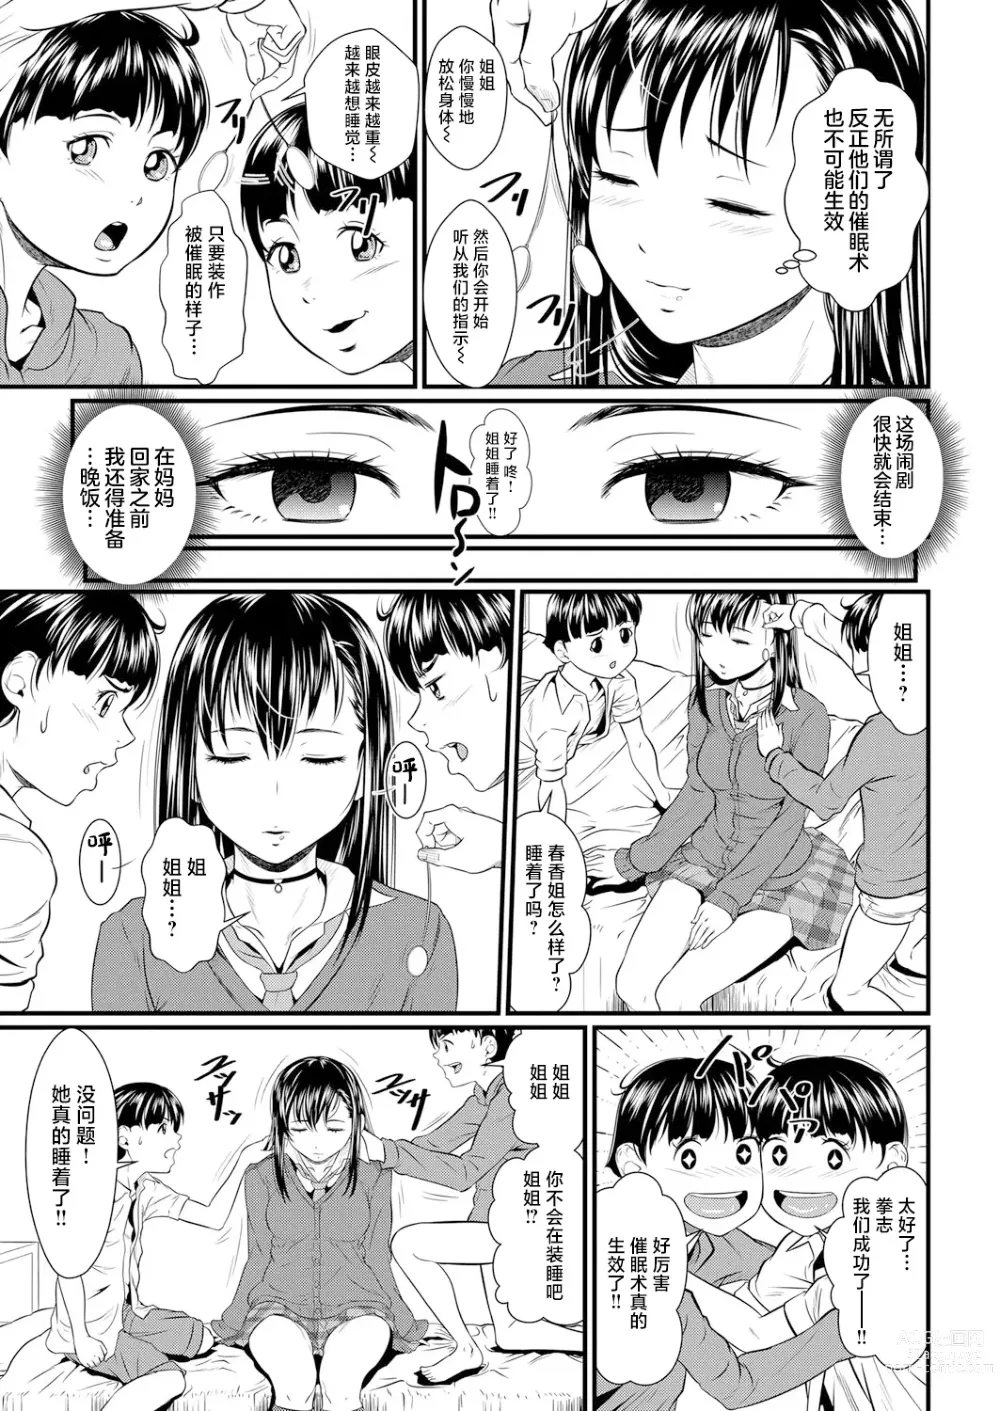 Page 5 of manga Miracle Illusion